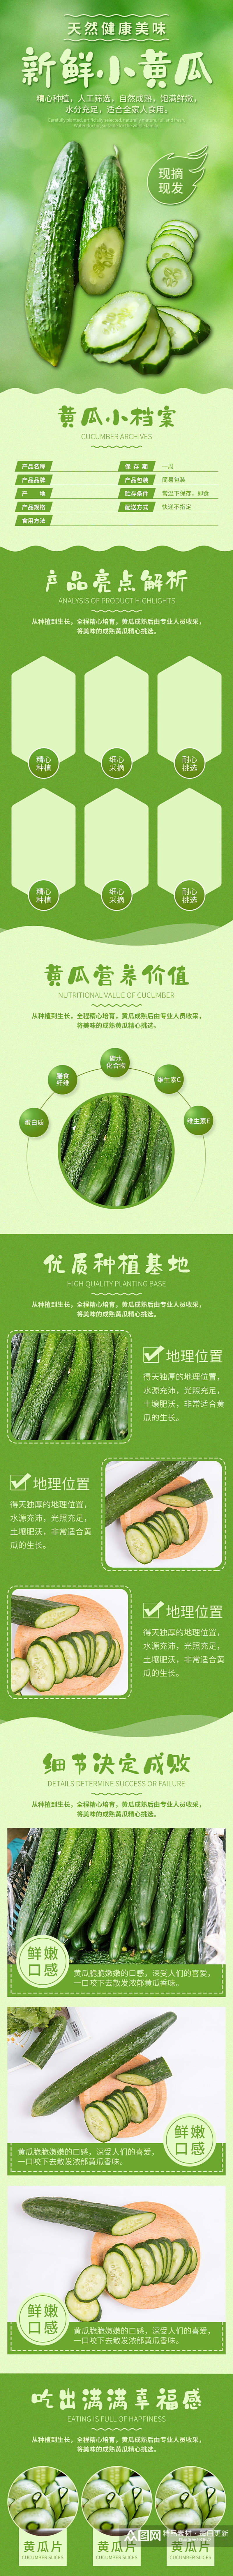 淘宝天猫绿色清新新鲜黄瓜有机蔬菜详情素材